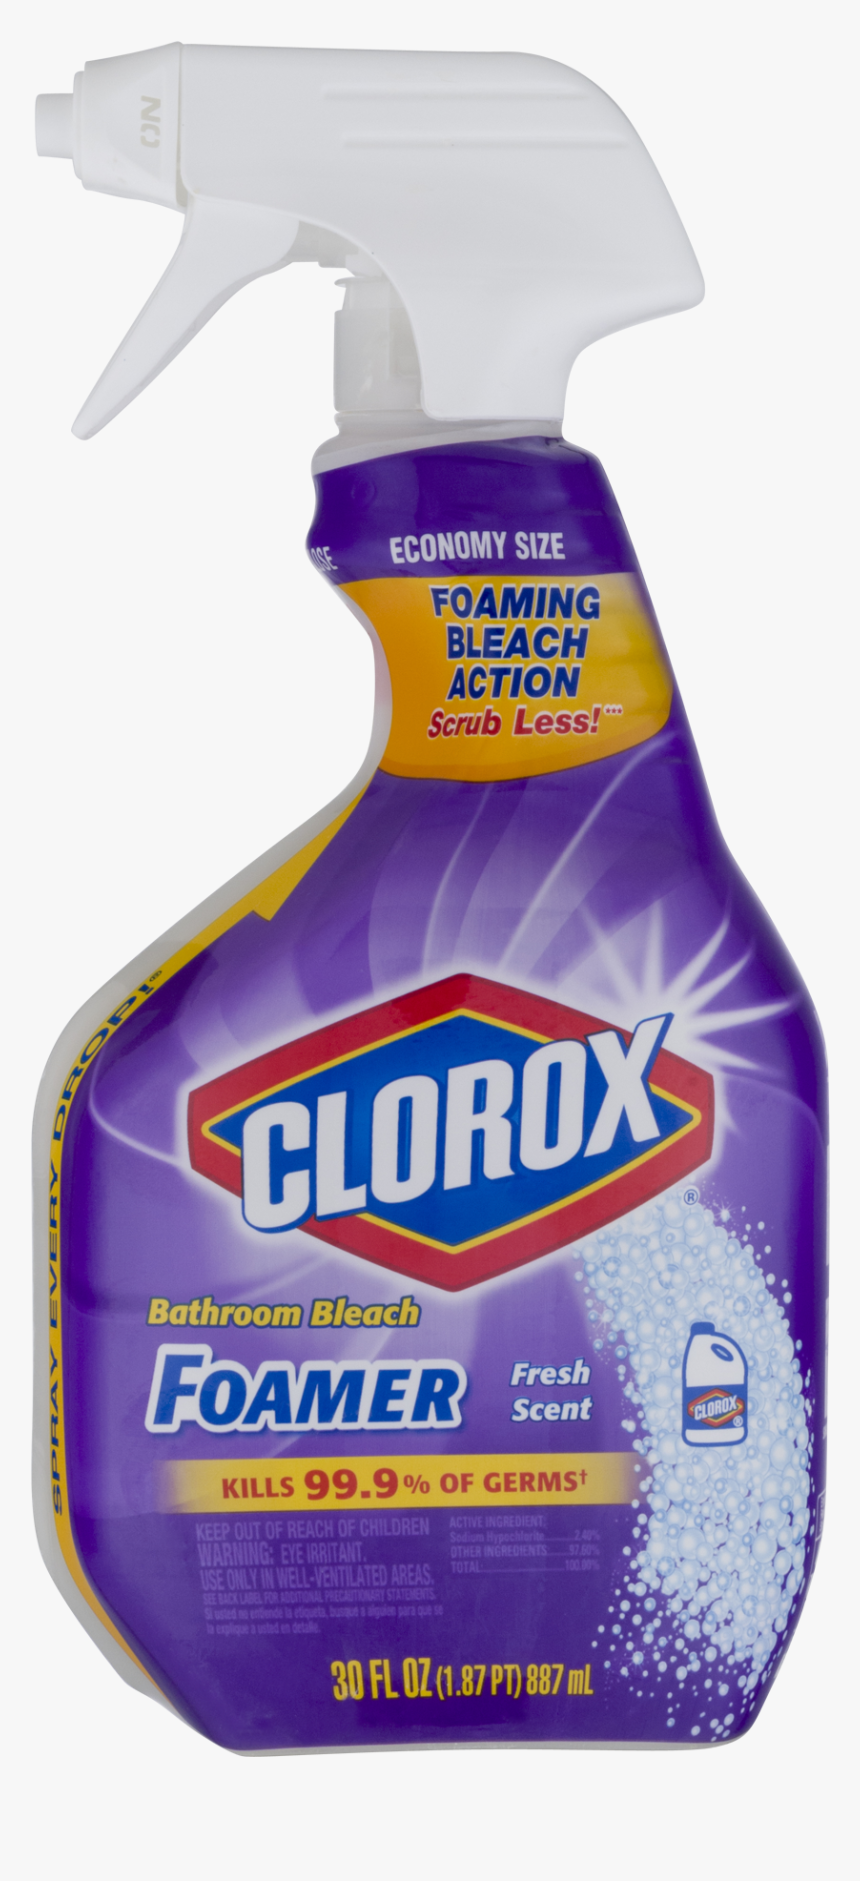 Transparent Clorox Bleach Png - Clorox, Png Download, Free Download